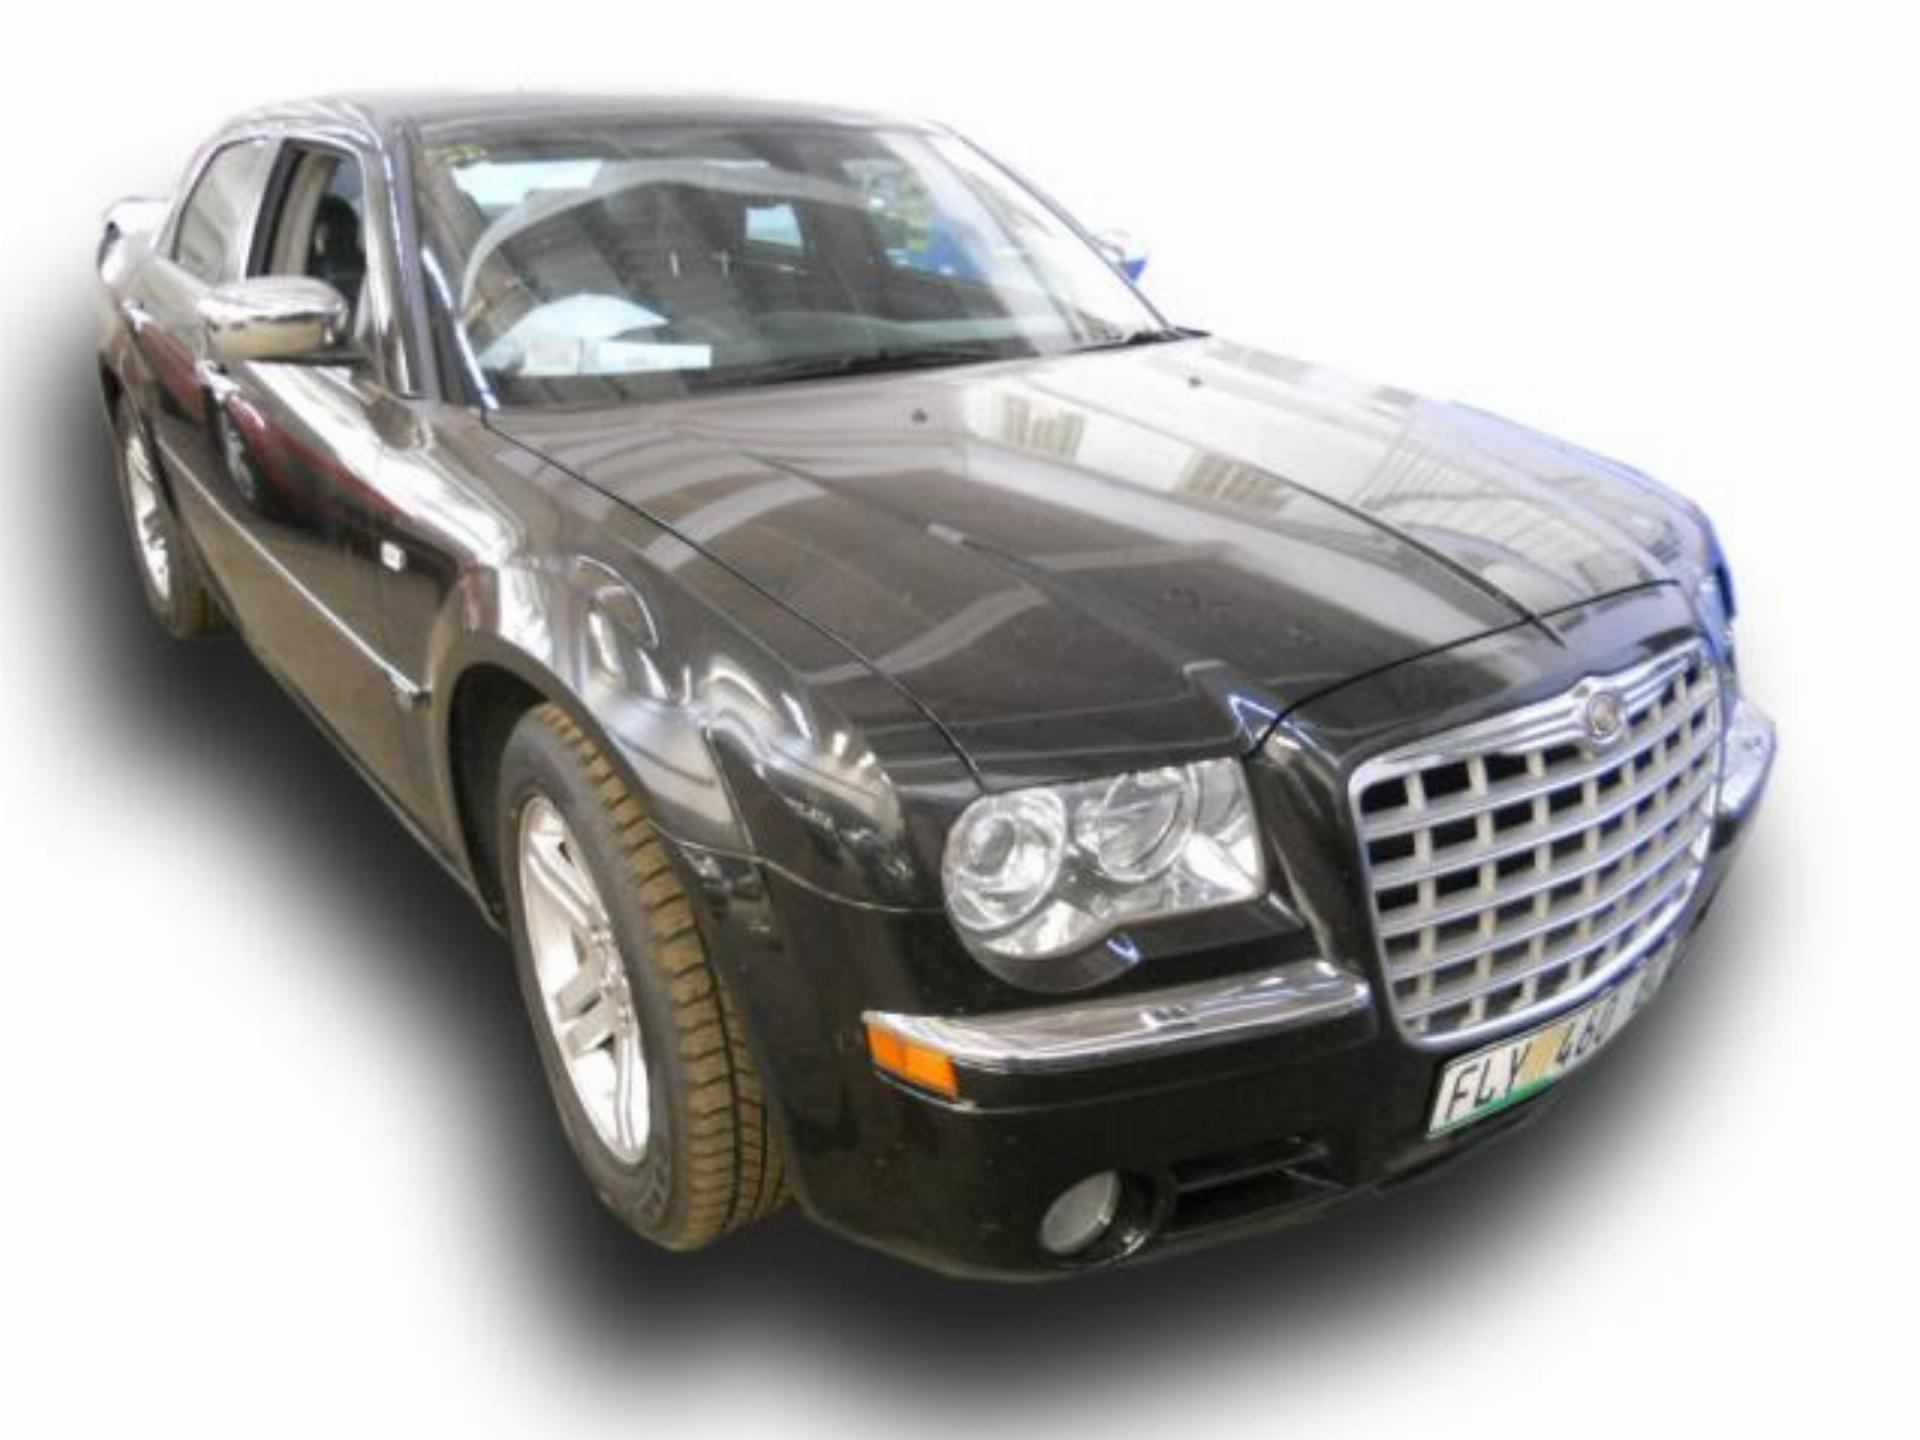 Repossessed Chrysler 300C 5.7 V8 Hemi 2006 on auction